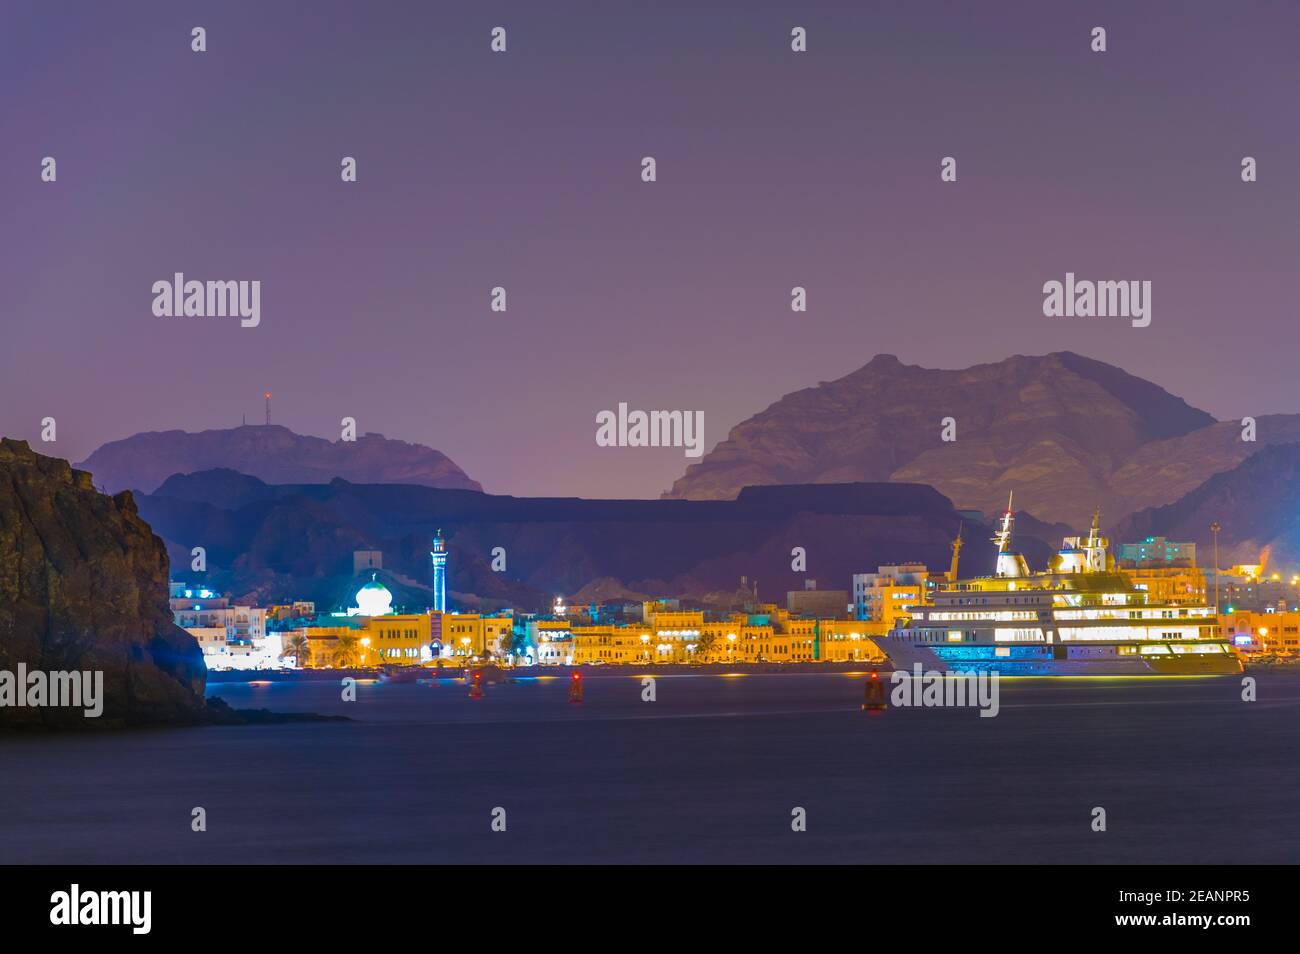 Vue sur le quartier de Muttrah à Muscat, Oman pendant la nuit. Banque D'Images